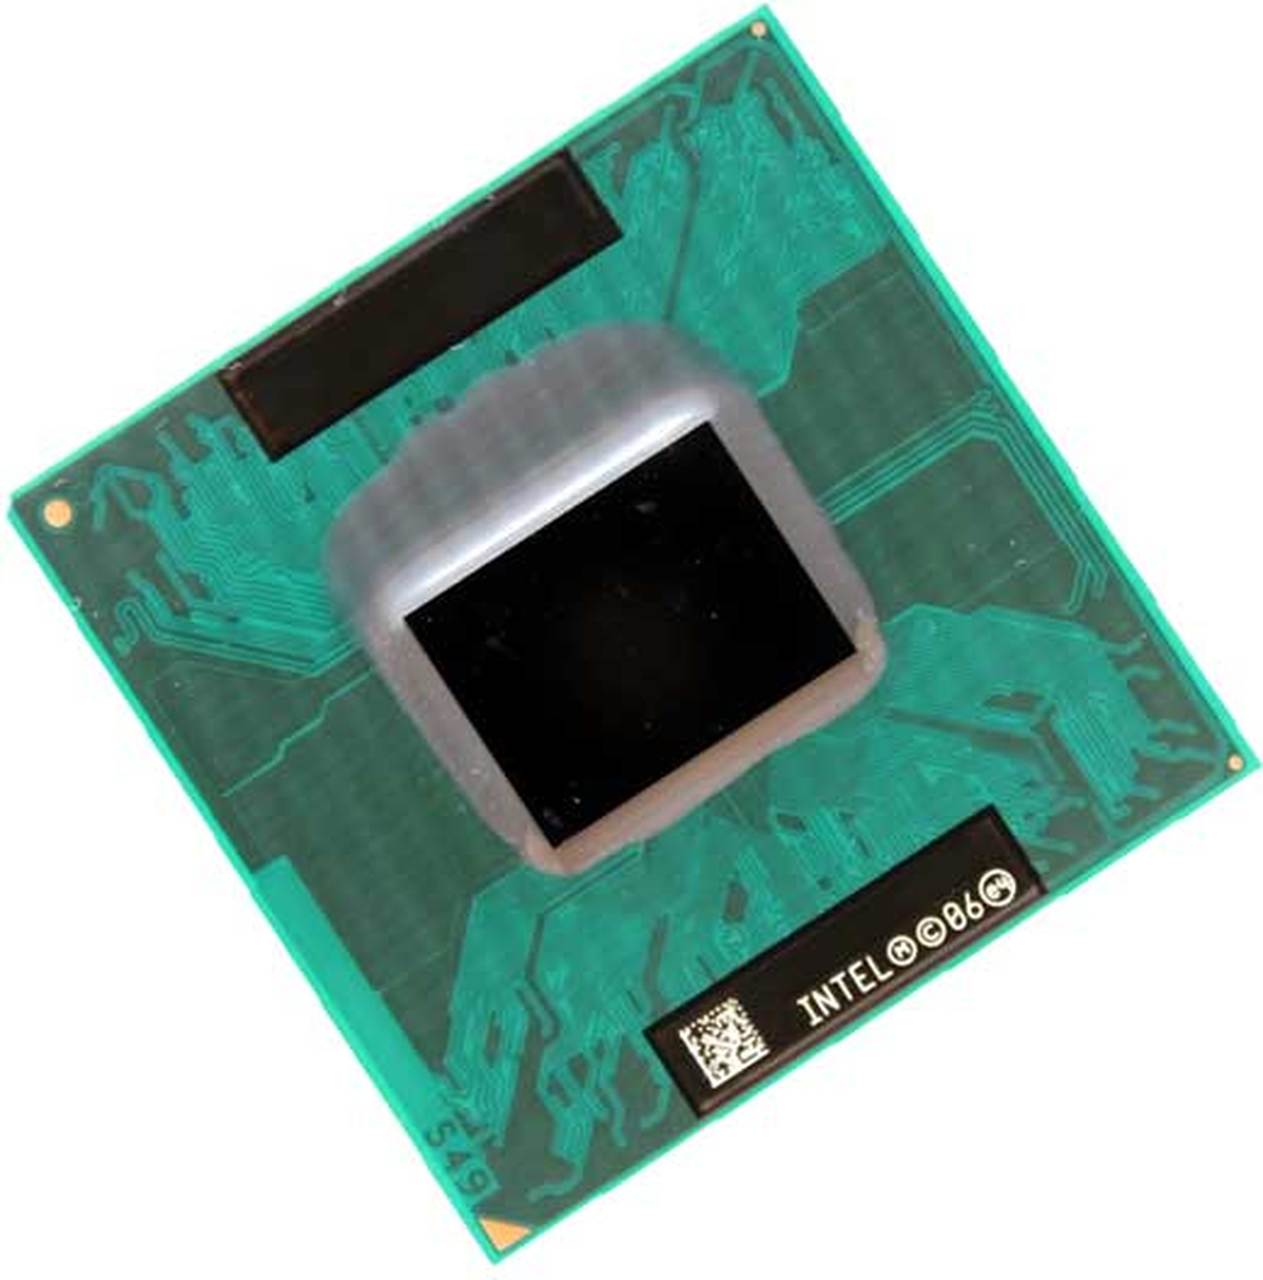 430896-001 | HP Core Solo T1350 1 Core 1.86GHz PGA478 2 MB L2 Processor